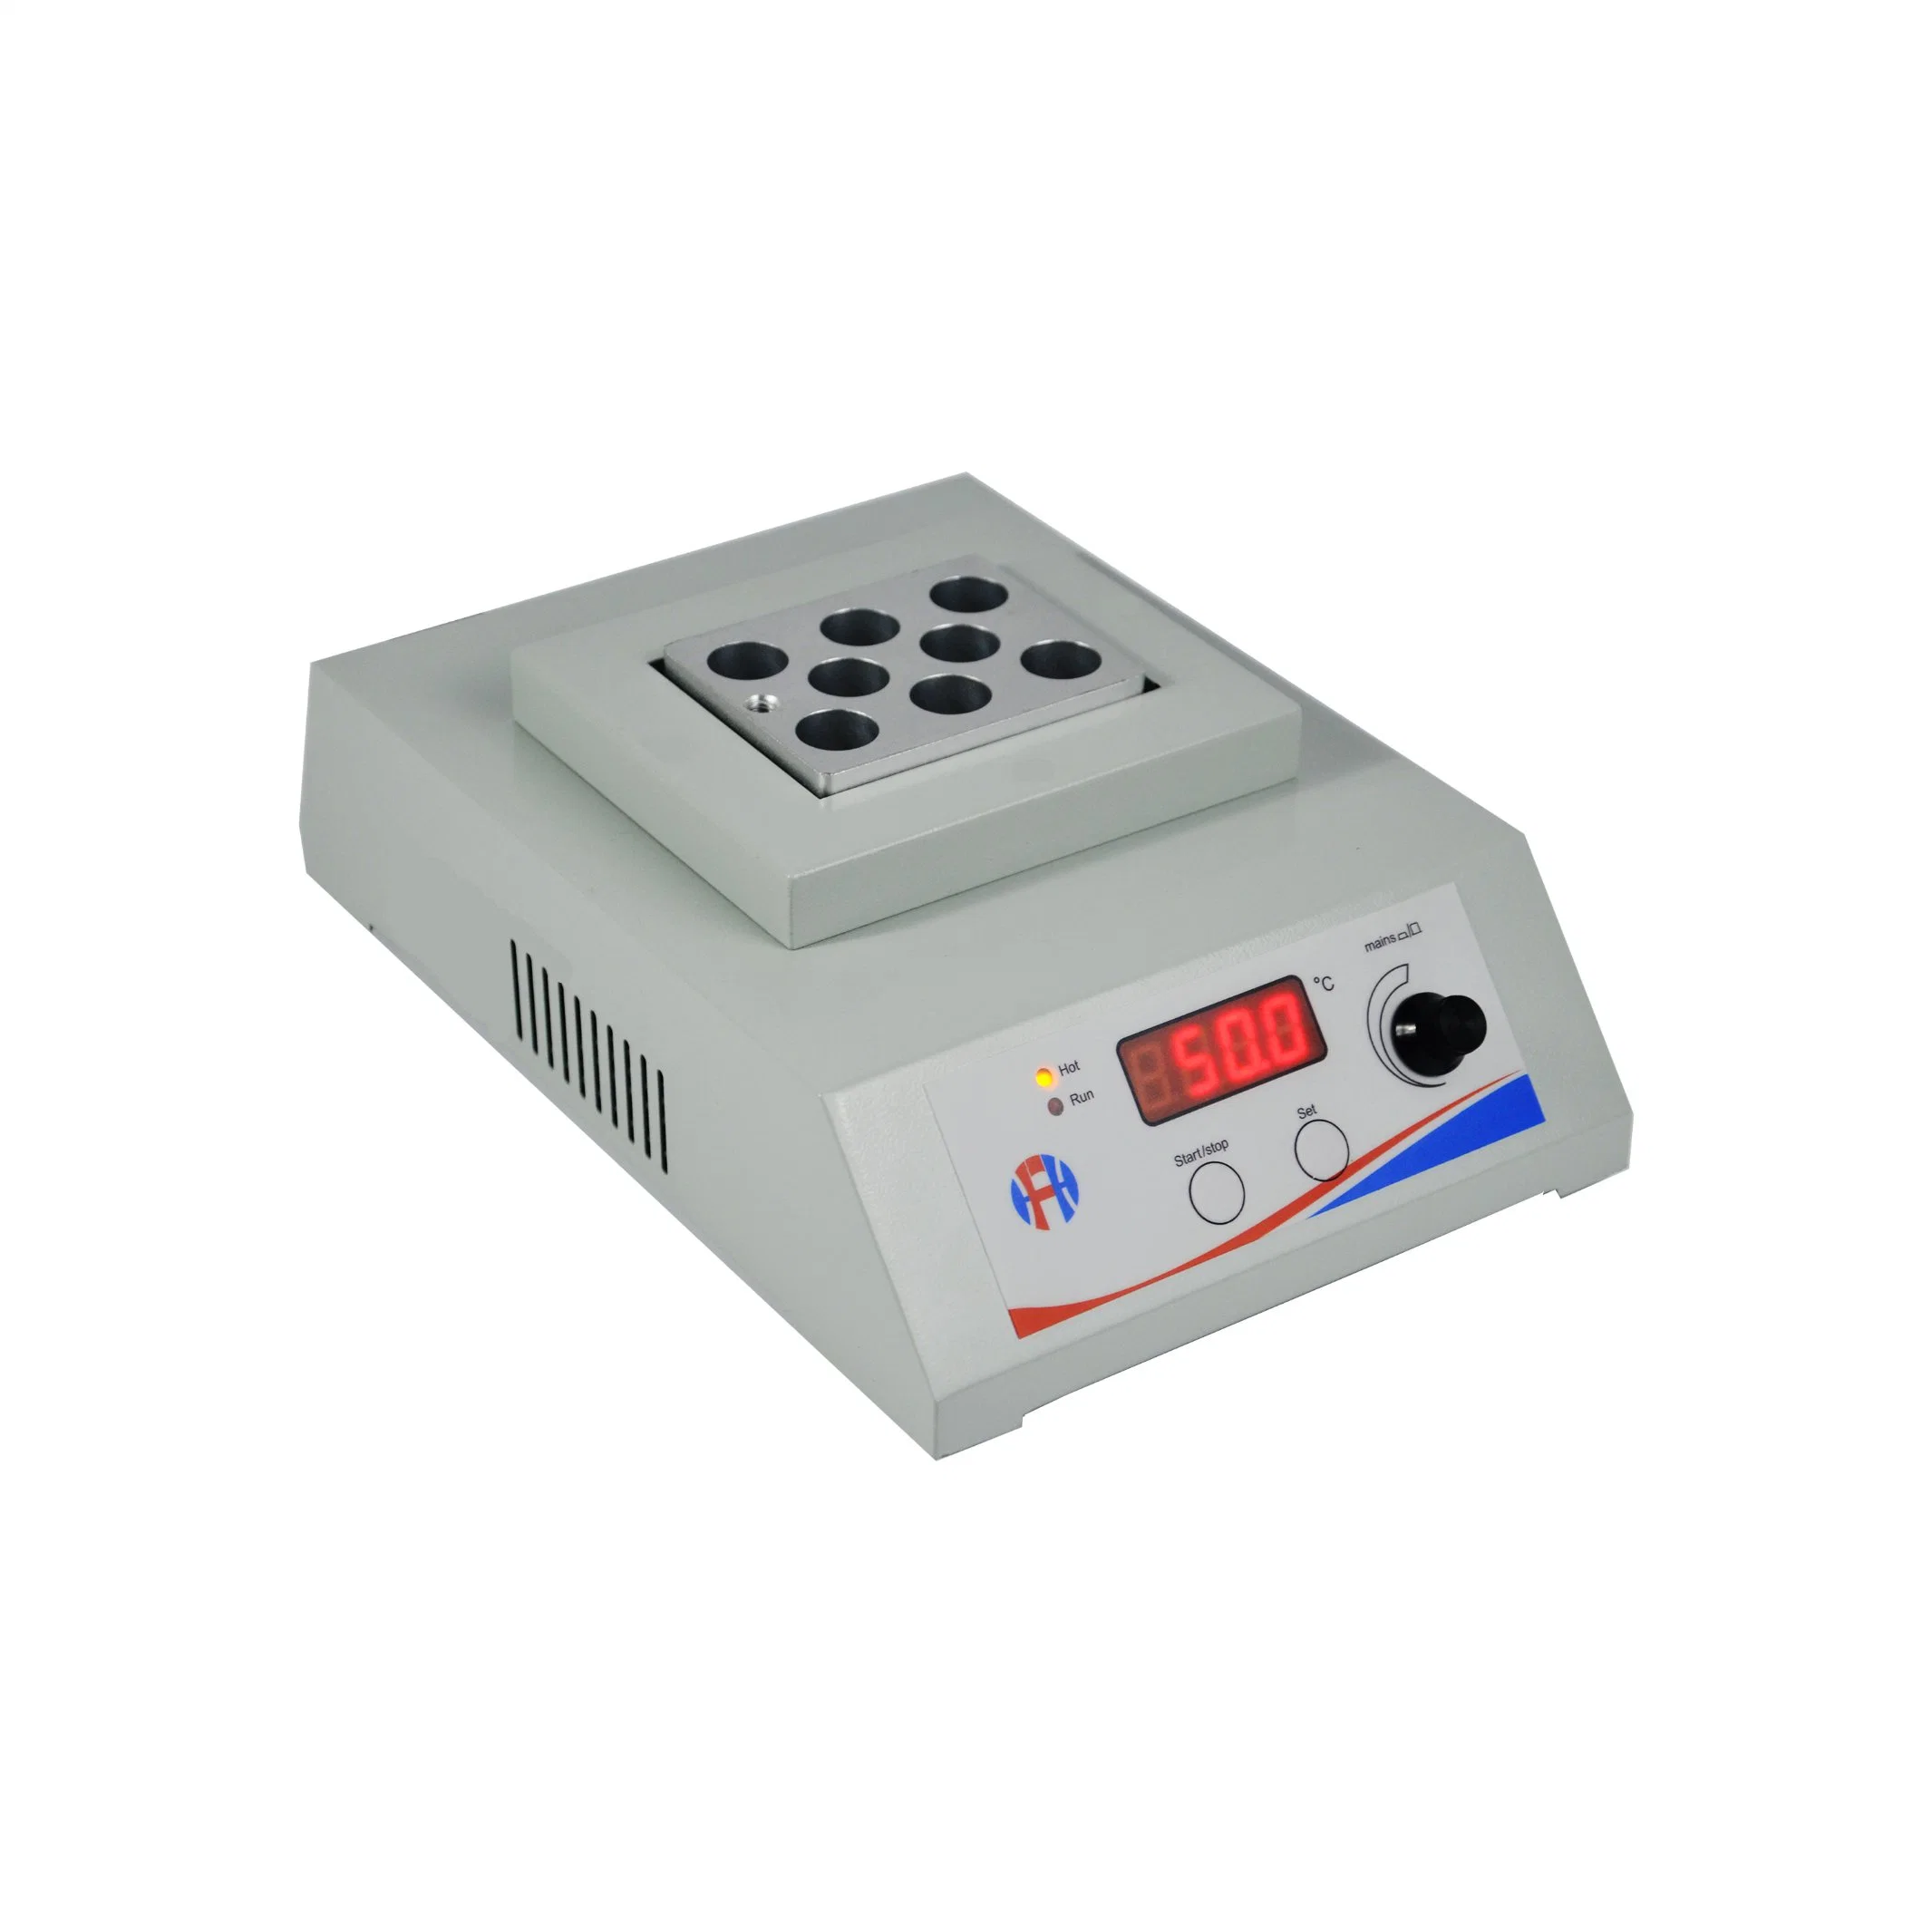 Incubadora digital de metal HdB-101d Aquecimento Thermo Control para banho seco Instrumentos de laboratório/laboratório